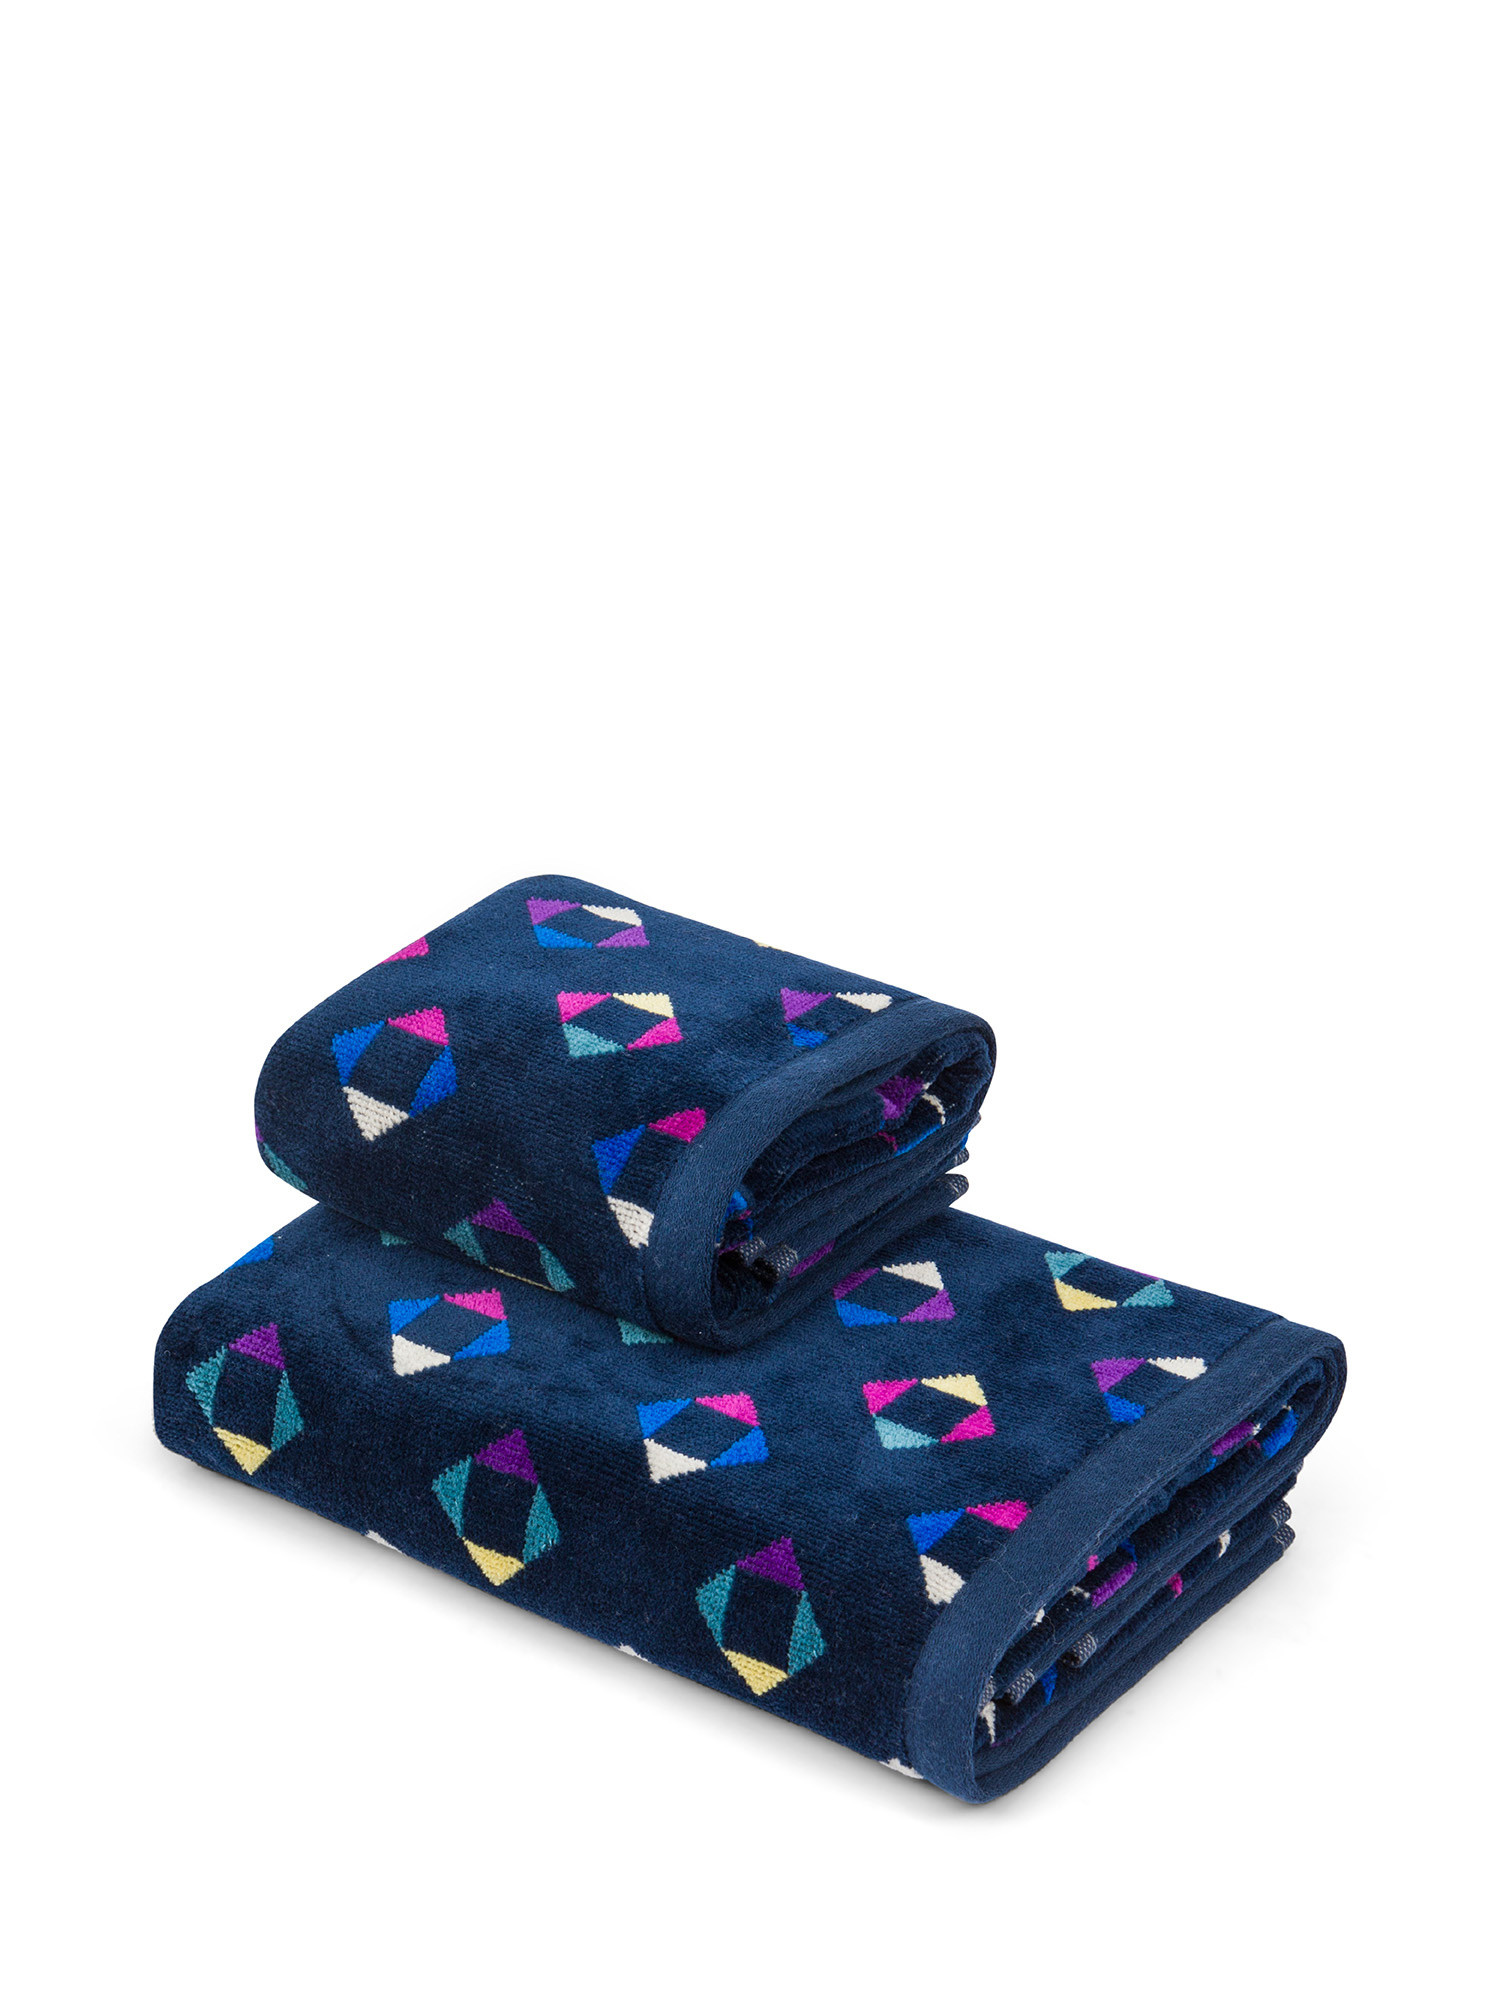 Asciugamano in velour di cotone con fantasia geometrica, Multicolor, large image number 0